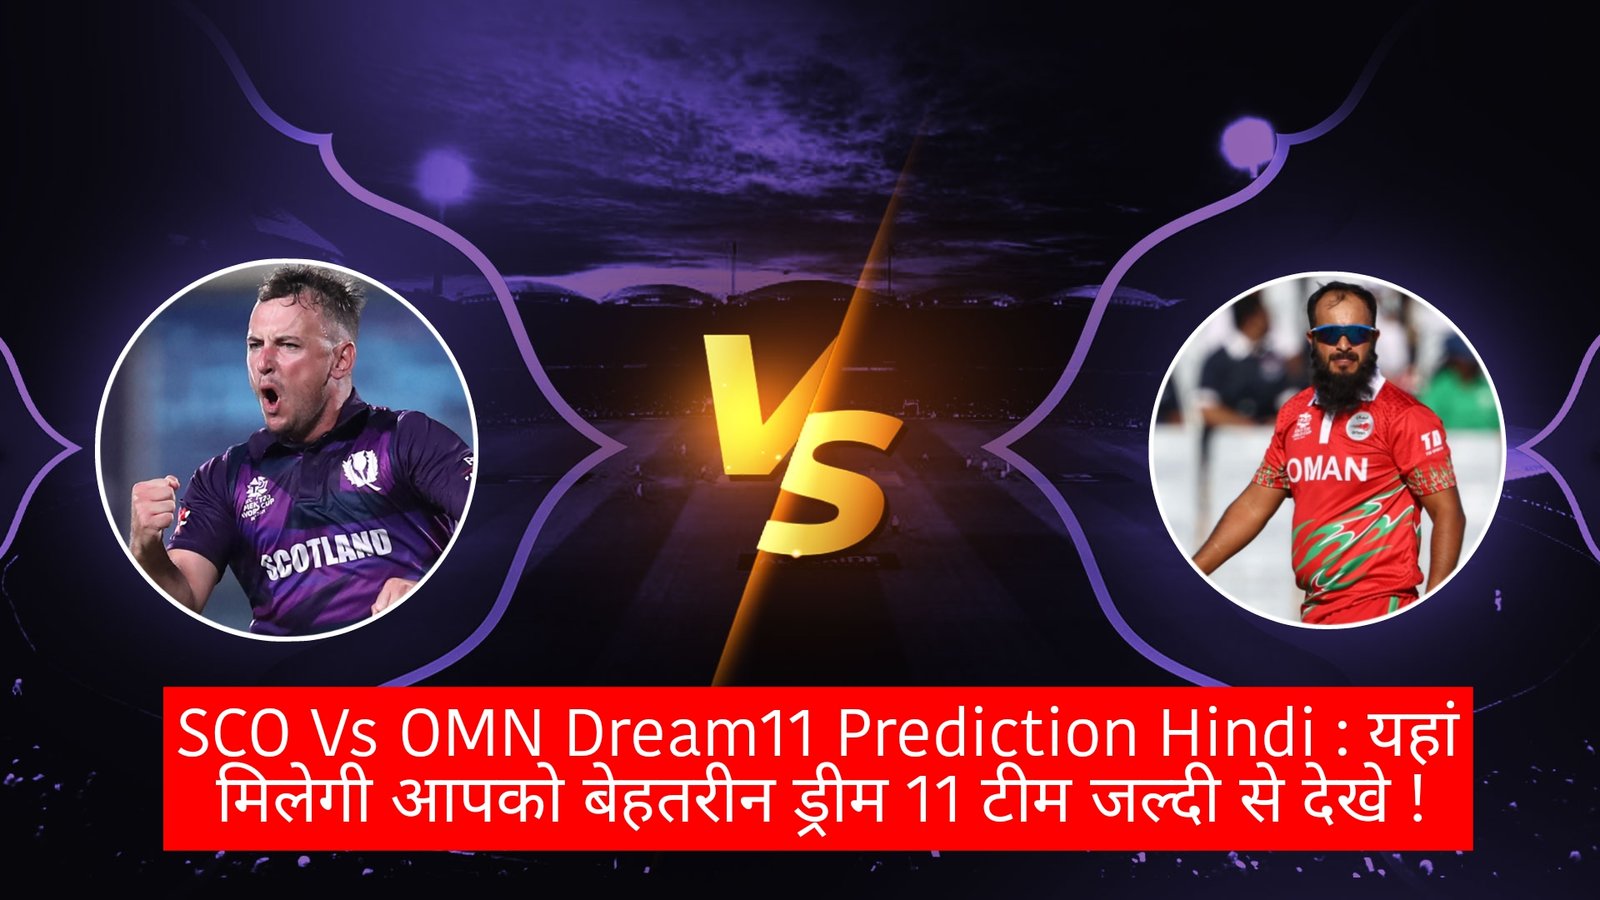 SCO Vs OMN Dream11 Prediction Hindi